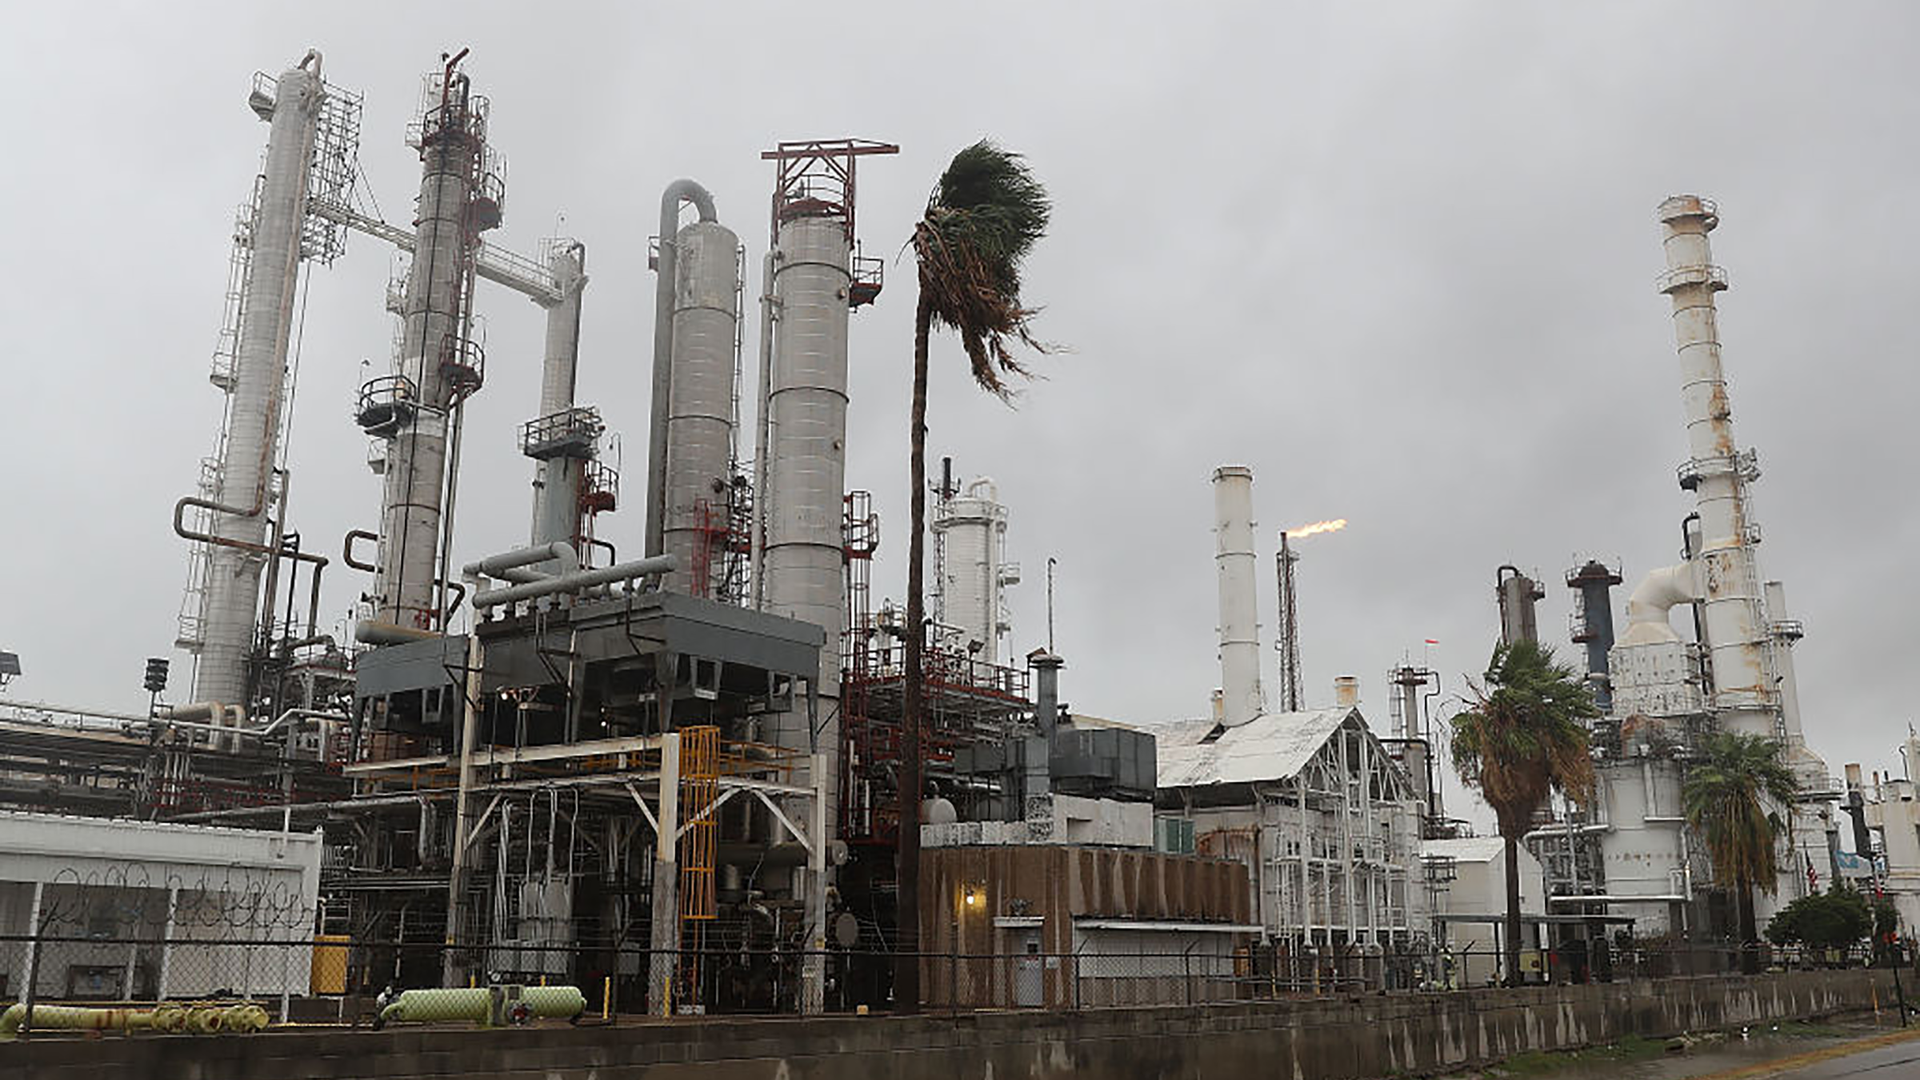 An oil refinery in Corpus Christi, Texas